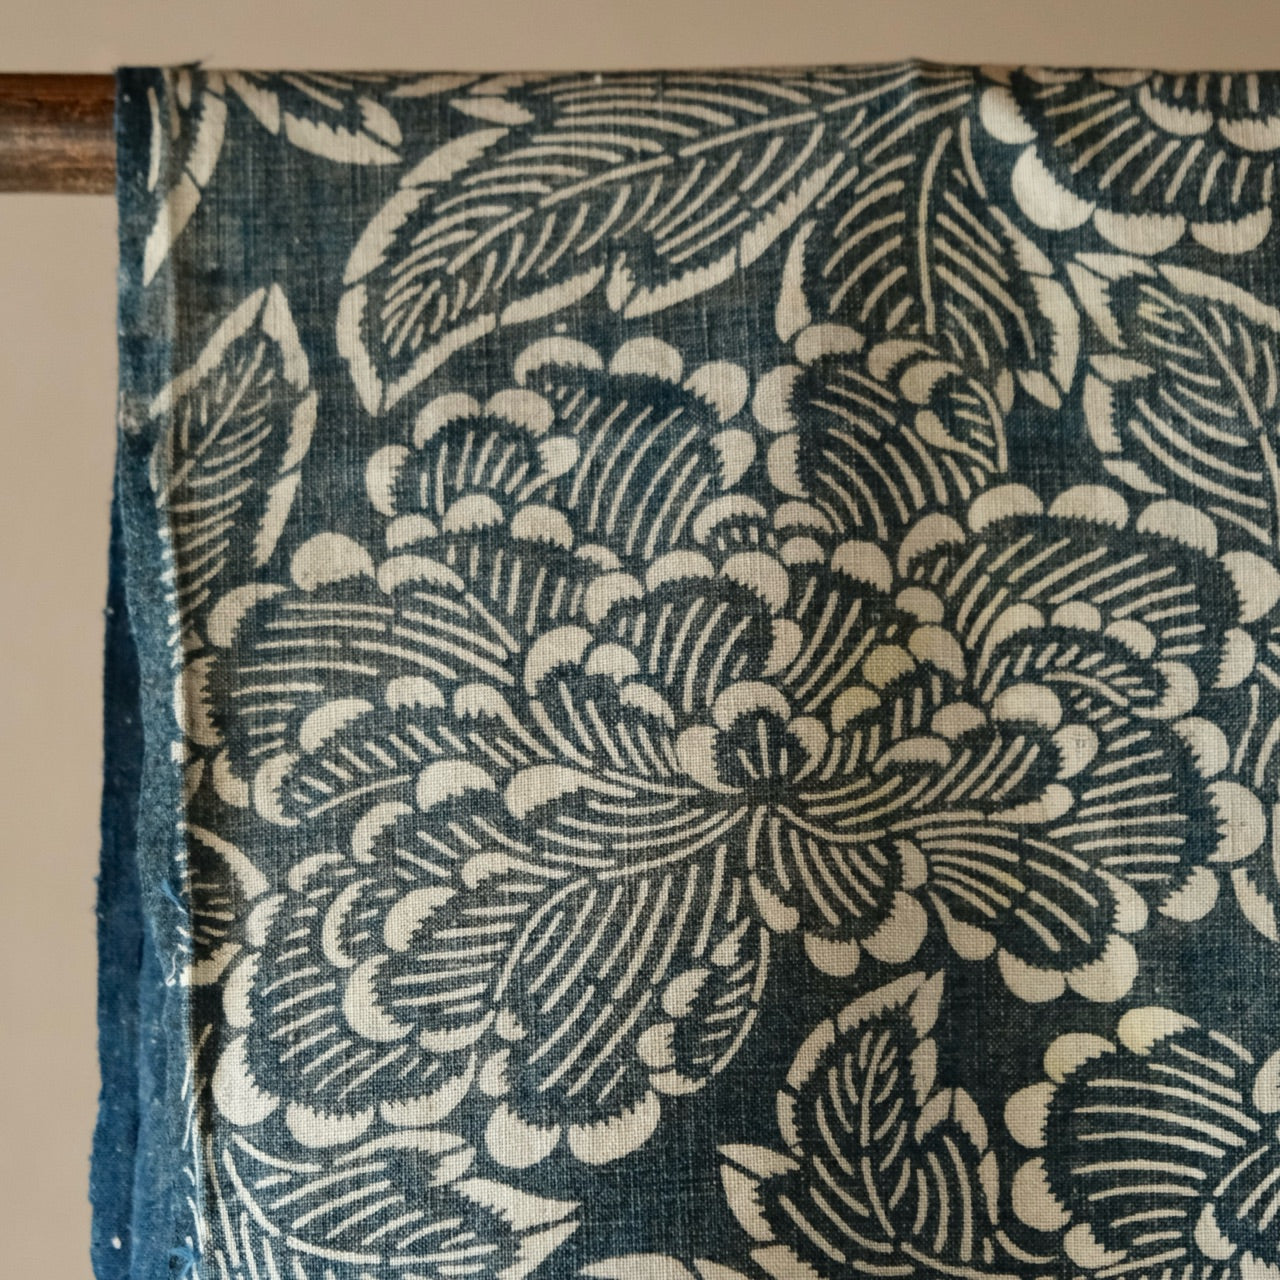 Vintage Japanese Boro Indigo-dyed Katazome Fabric (textile)with Peony pattern